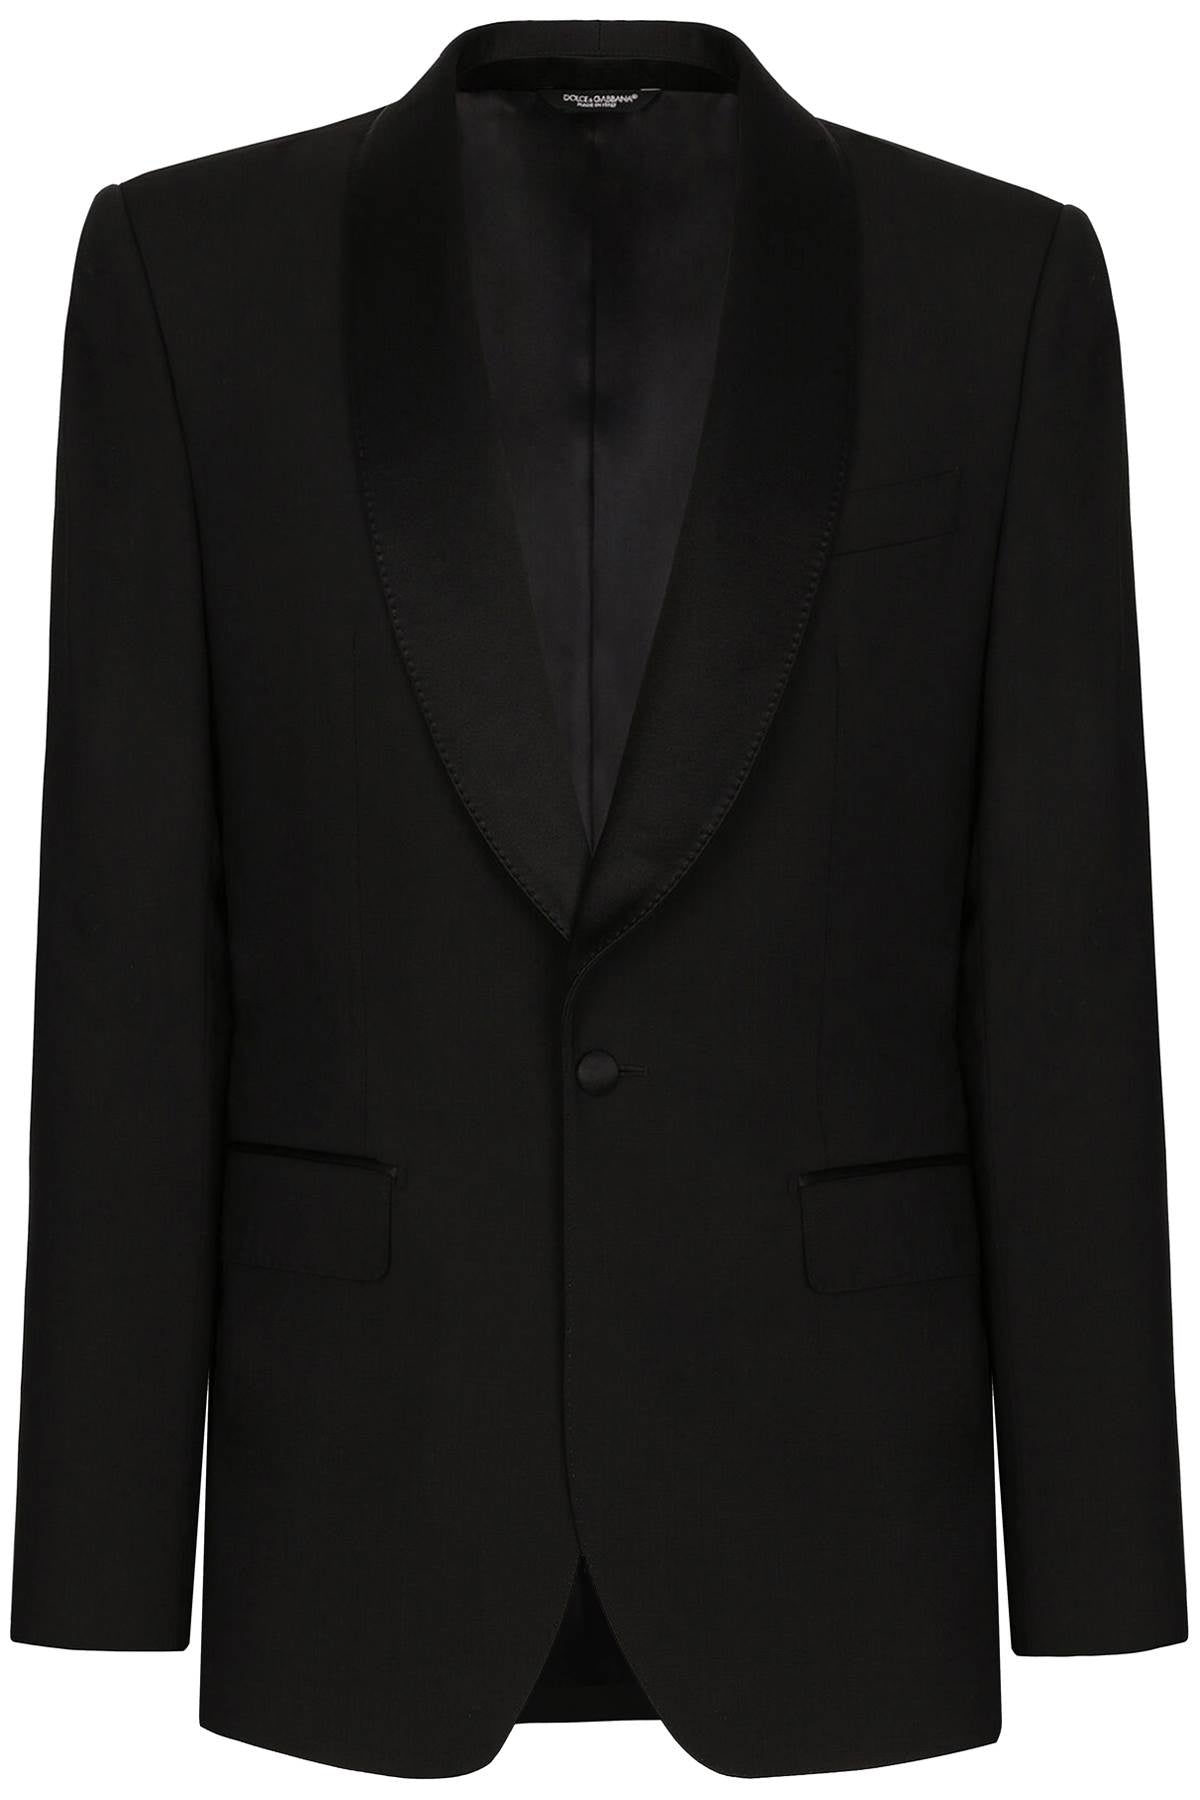 Dolce & gabbana 'sicilia' tuxedo jacket-0